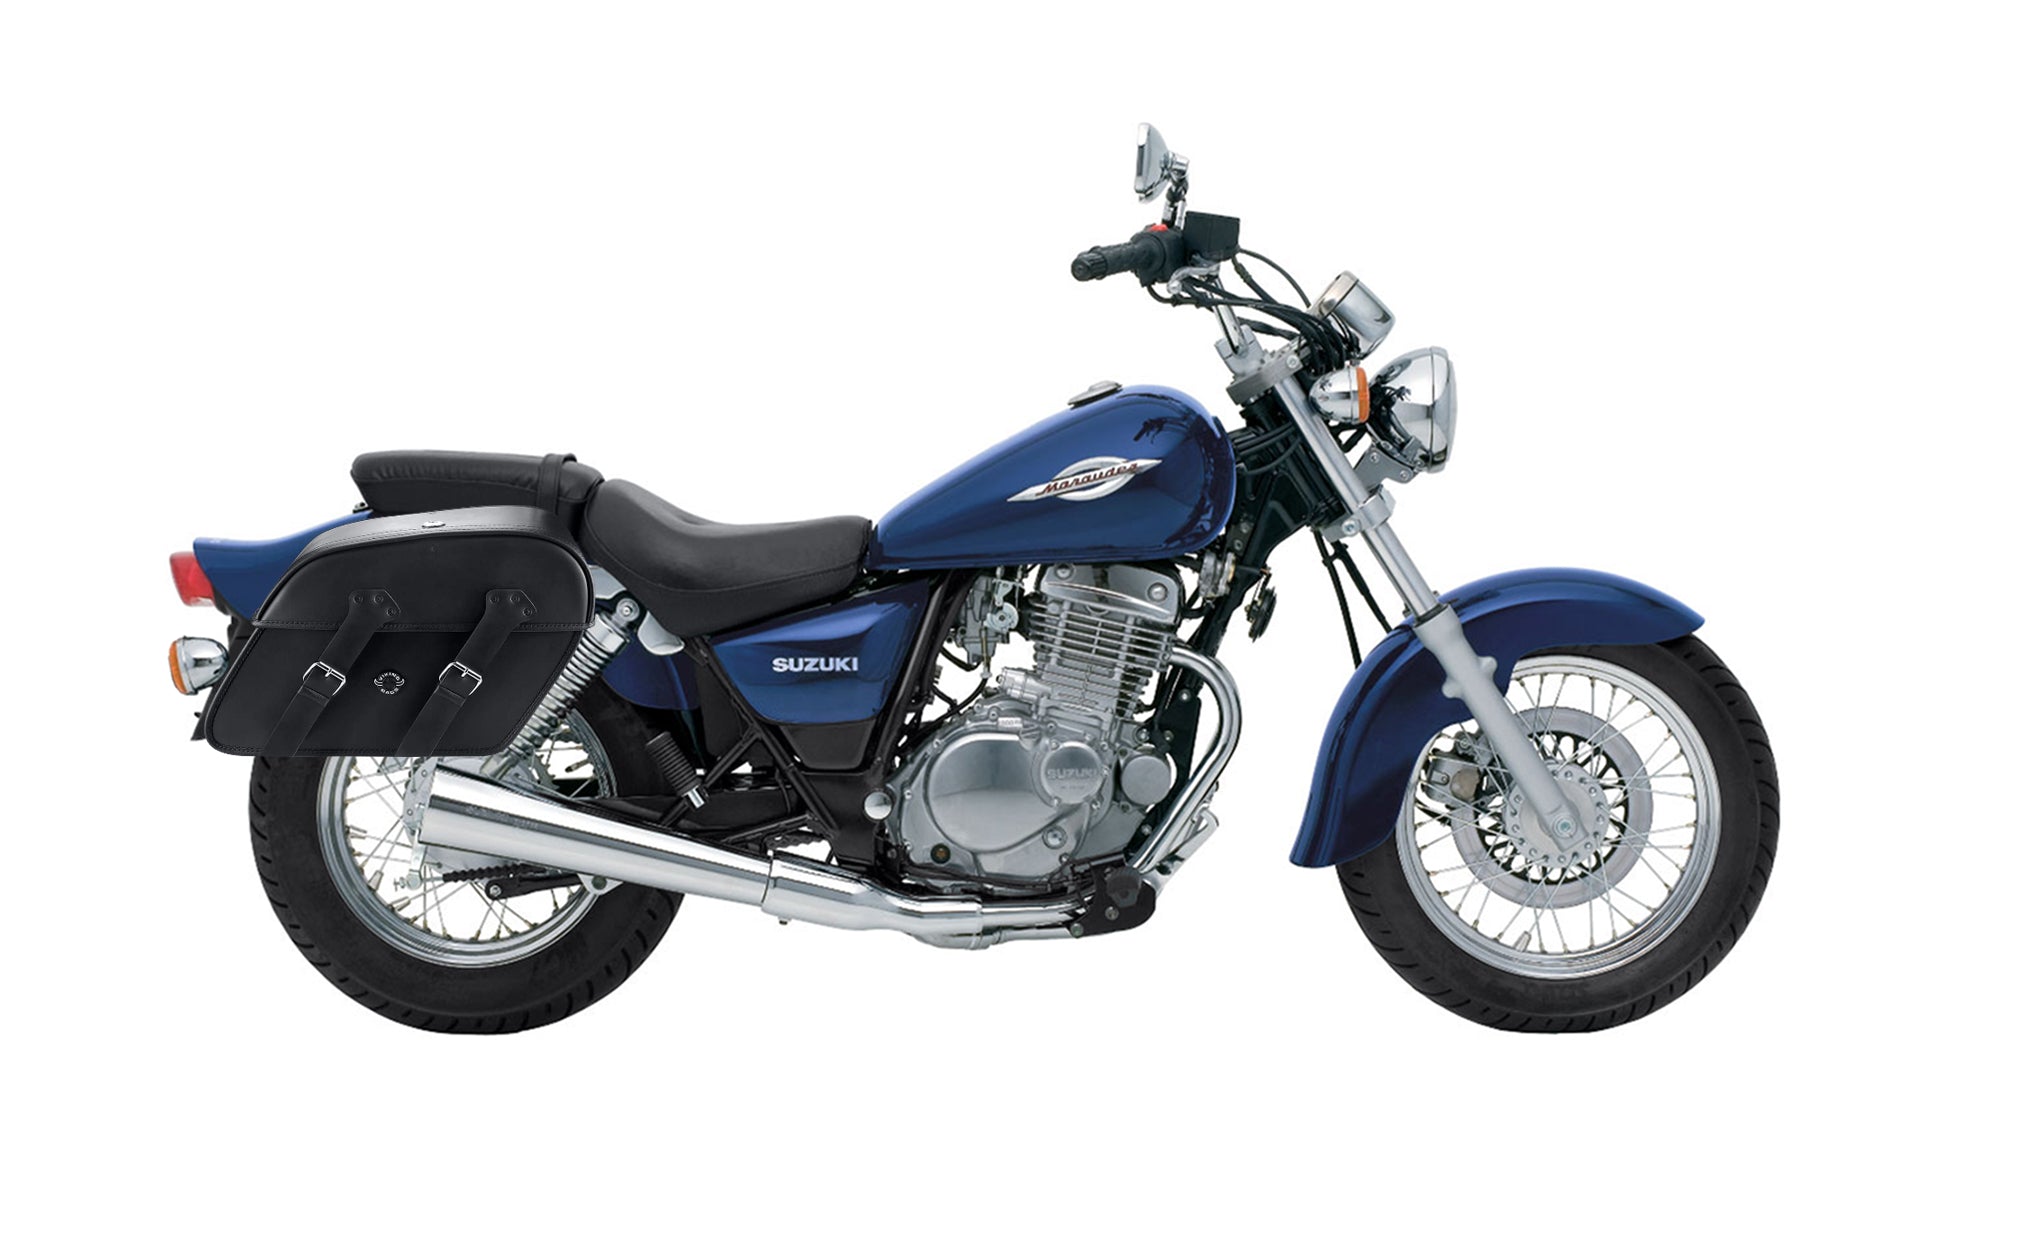 Viking Raven Extra Large Suzuki Marauder Gz250 Leather Motorcycle Saddlebags on Bike Photo @expand